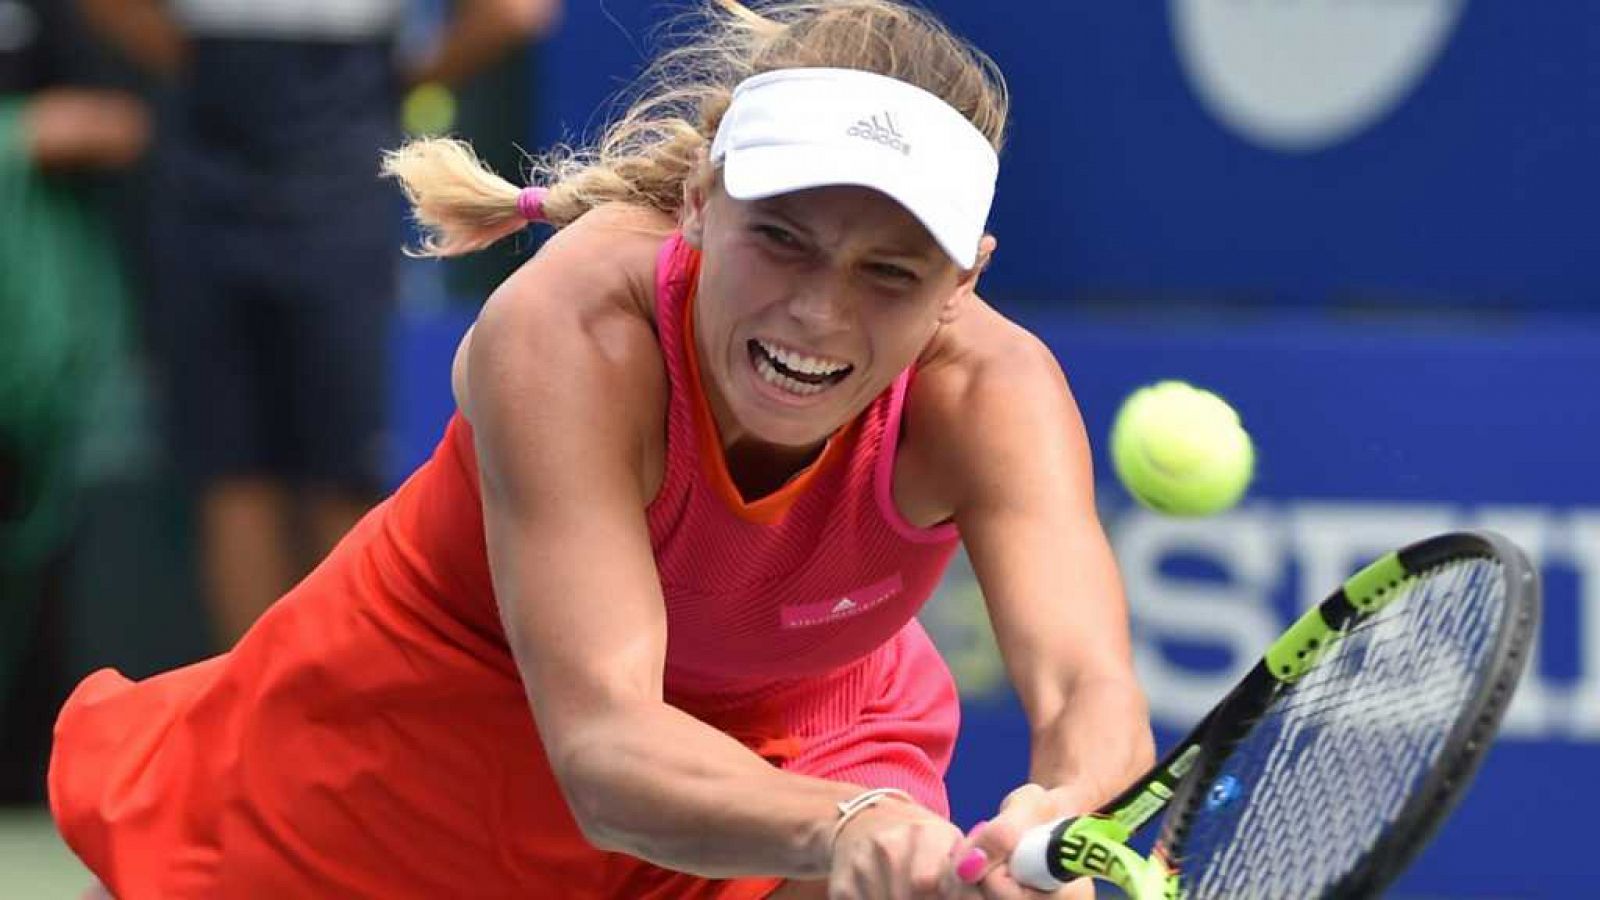 Tenis - WTA Torneo Tokio (Japón) Final:C.Wozniacki - A.Pavlyuchenkova